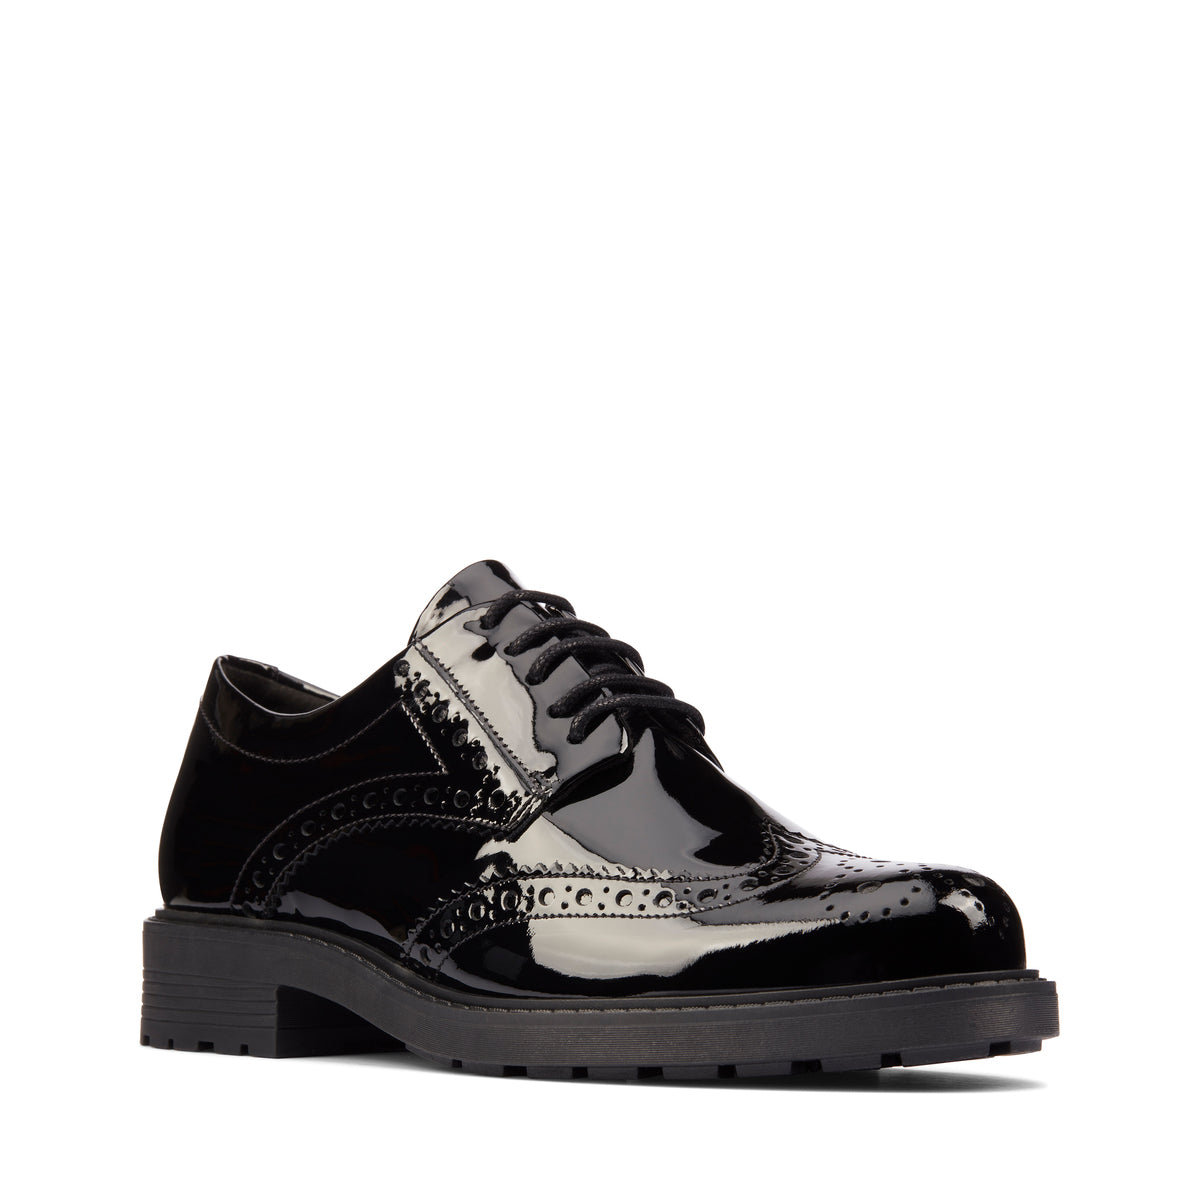 Zapatos Oxford De La Marca Clarks Para Mujer Modelo Orinoco Limit Black Patent En Color Negro